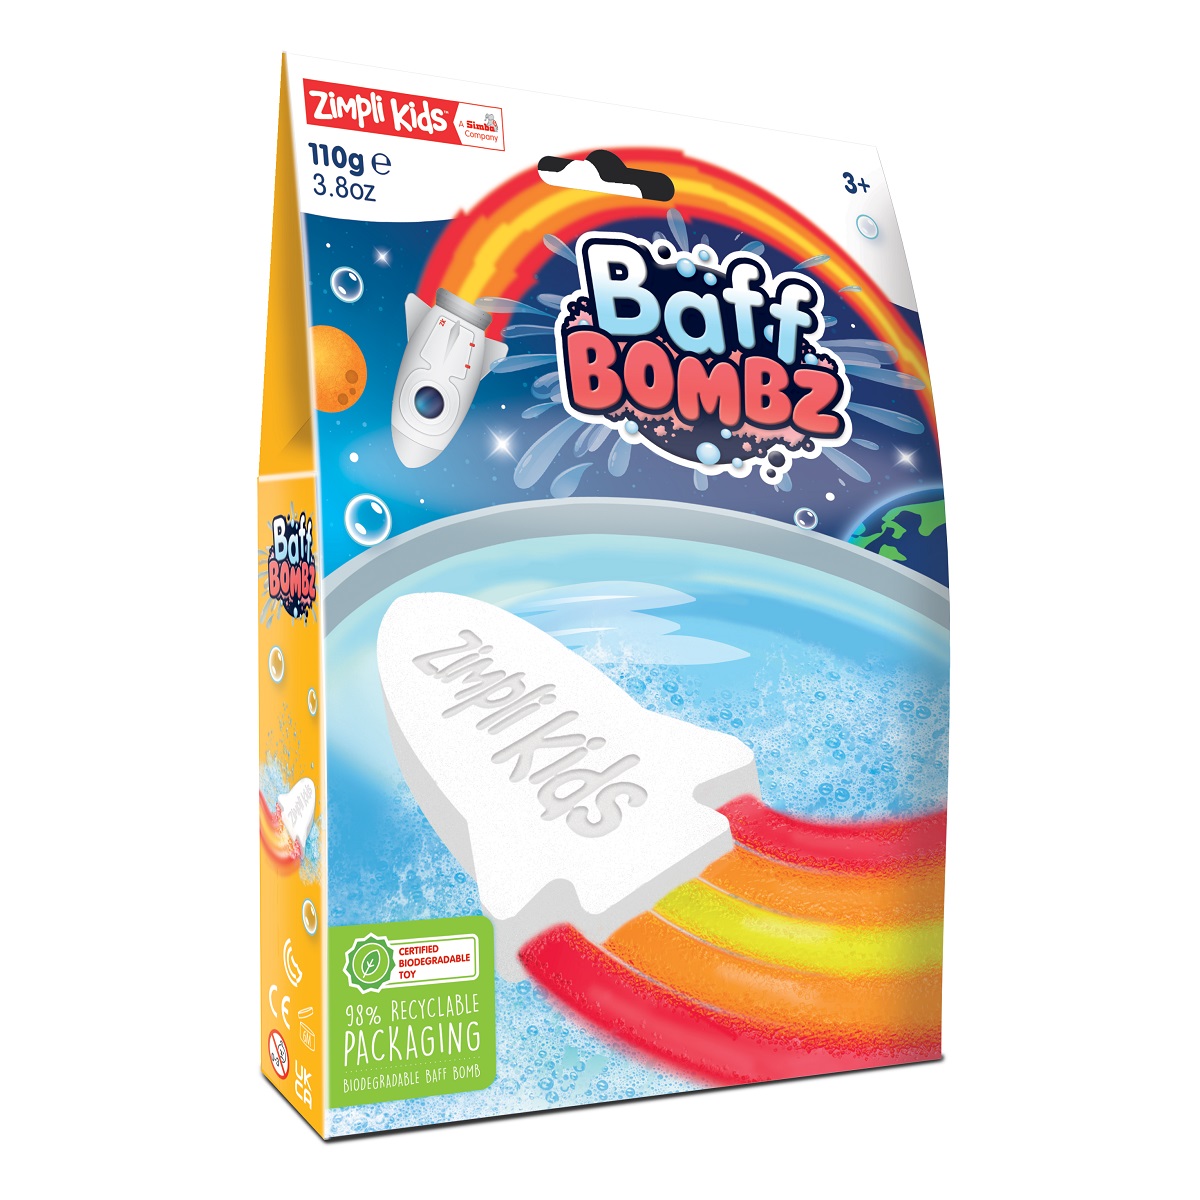 Rakieta do kąpieli zmieniająca kolor wody Baff Bombz Zimpli Kids - Rainbow